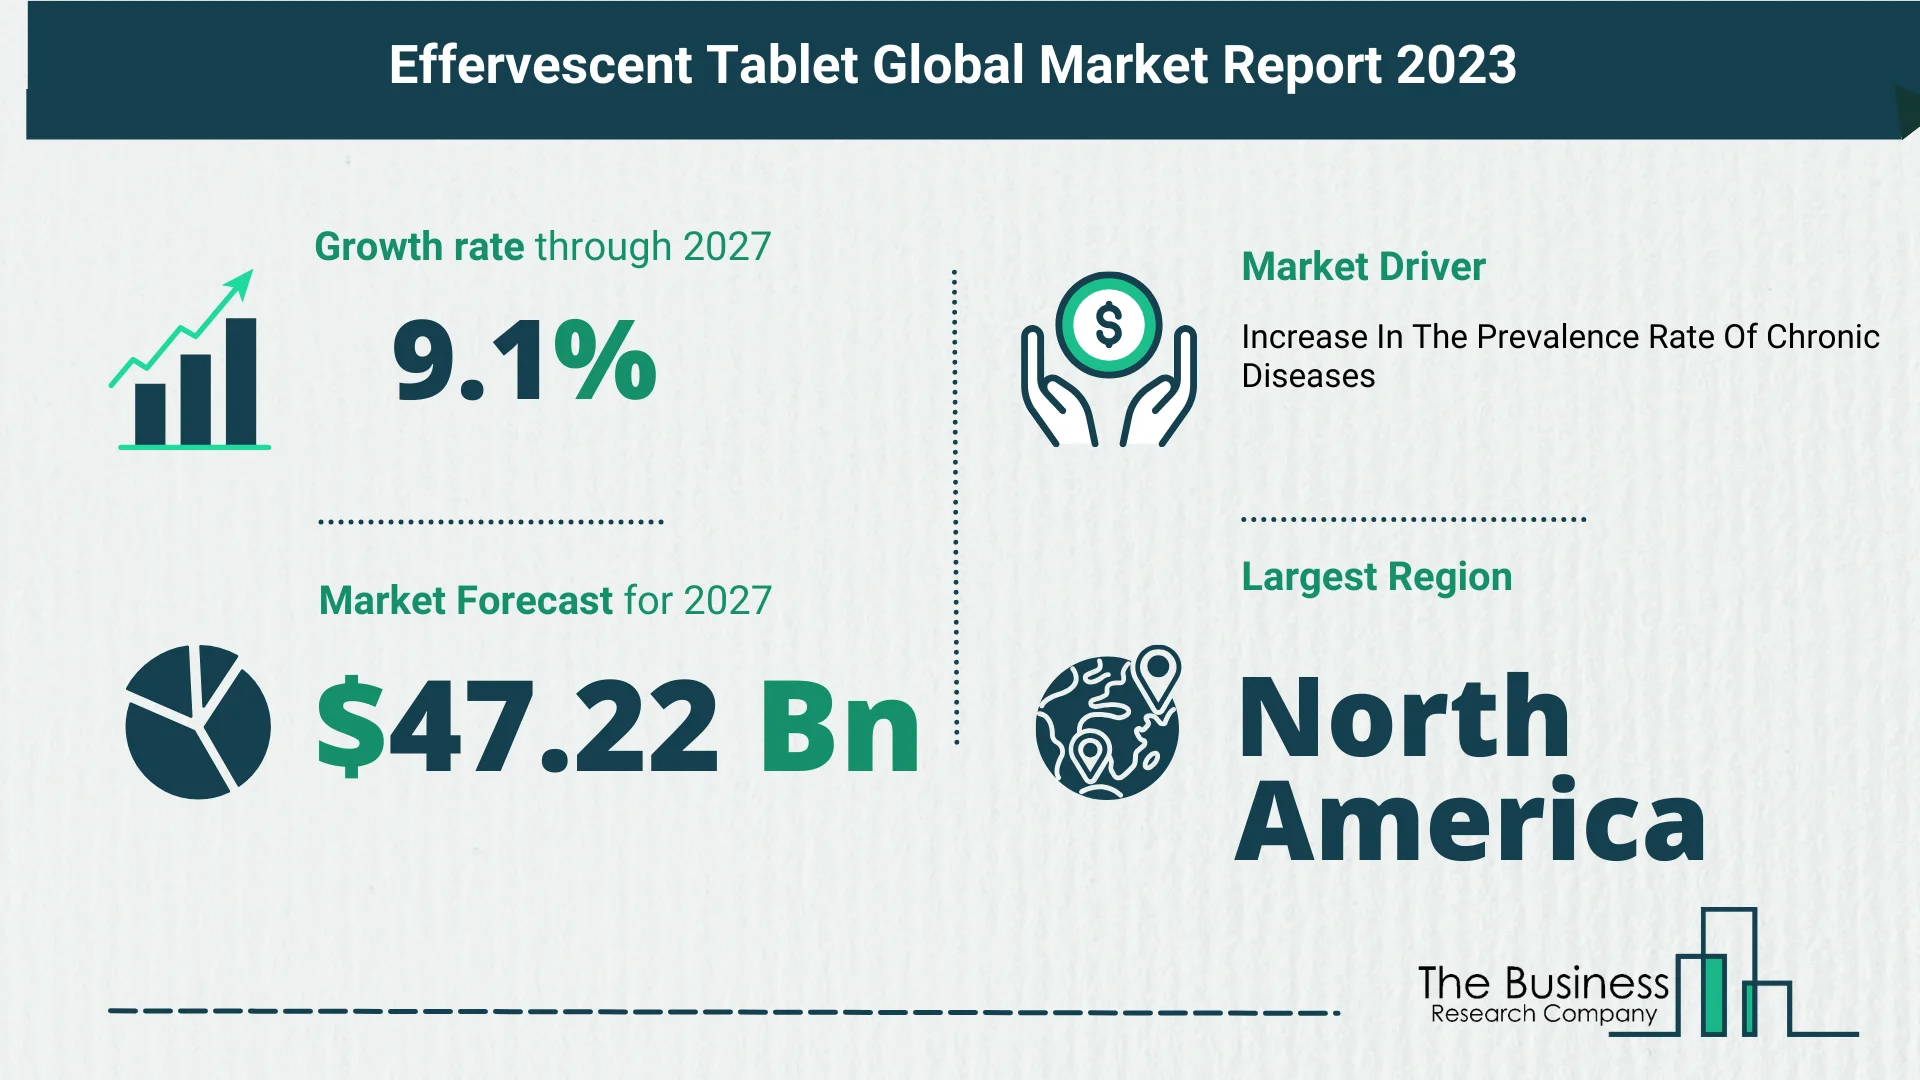 Global Effervescent Tablet Market Size